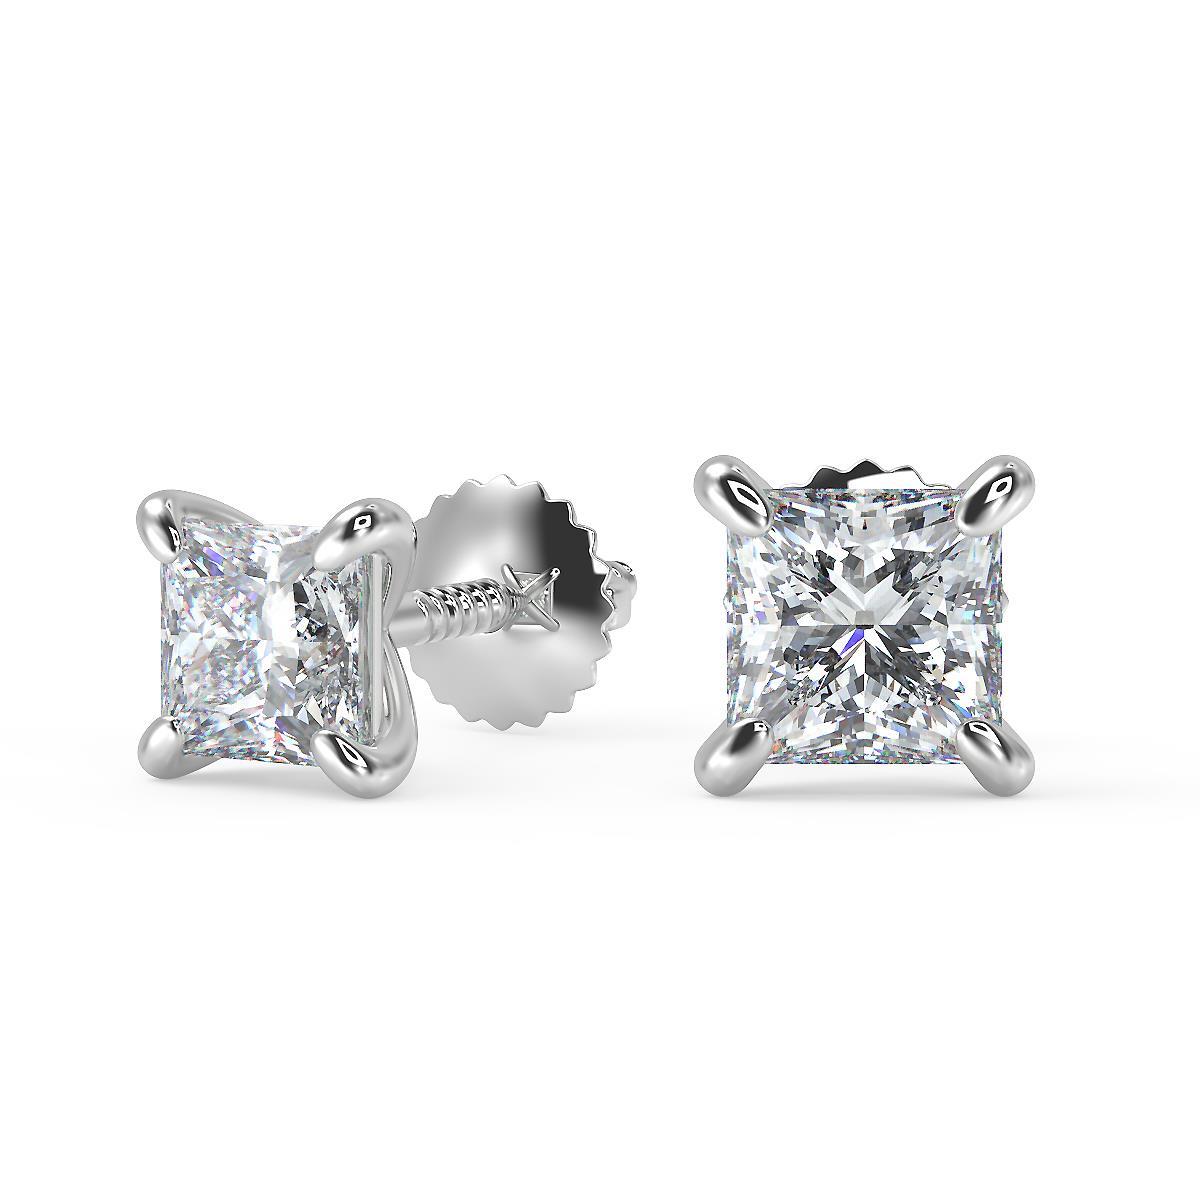 Princess Cut Diamond Earrings Screw Back Store, 54% OFF | www.hcb.cat